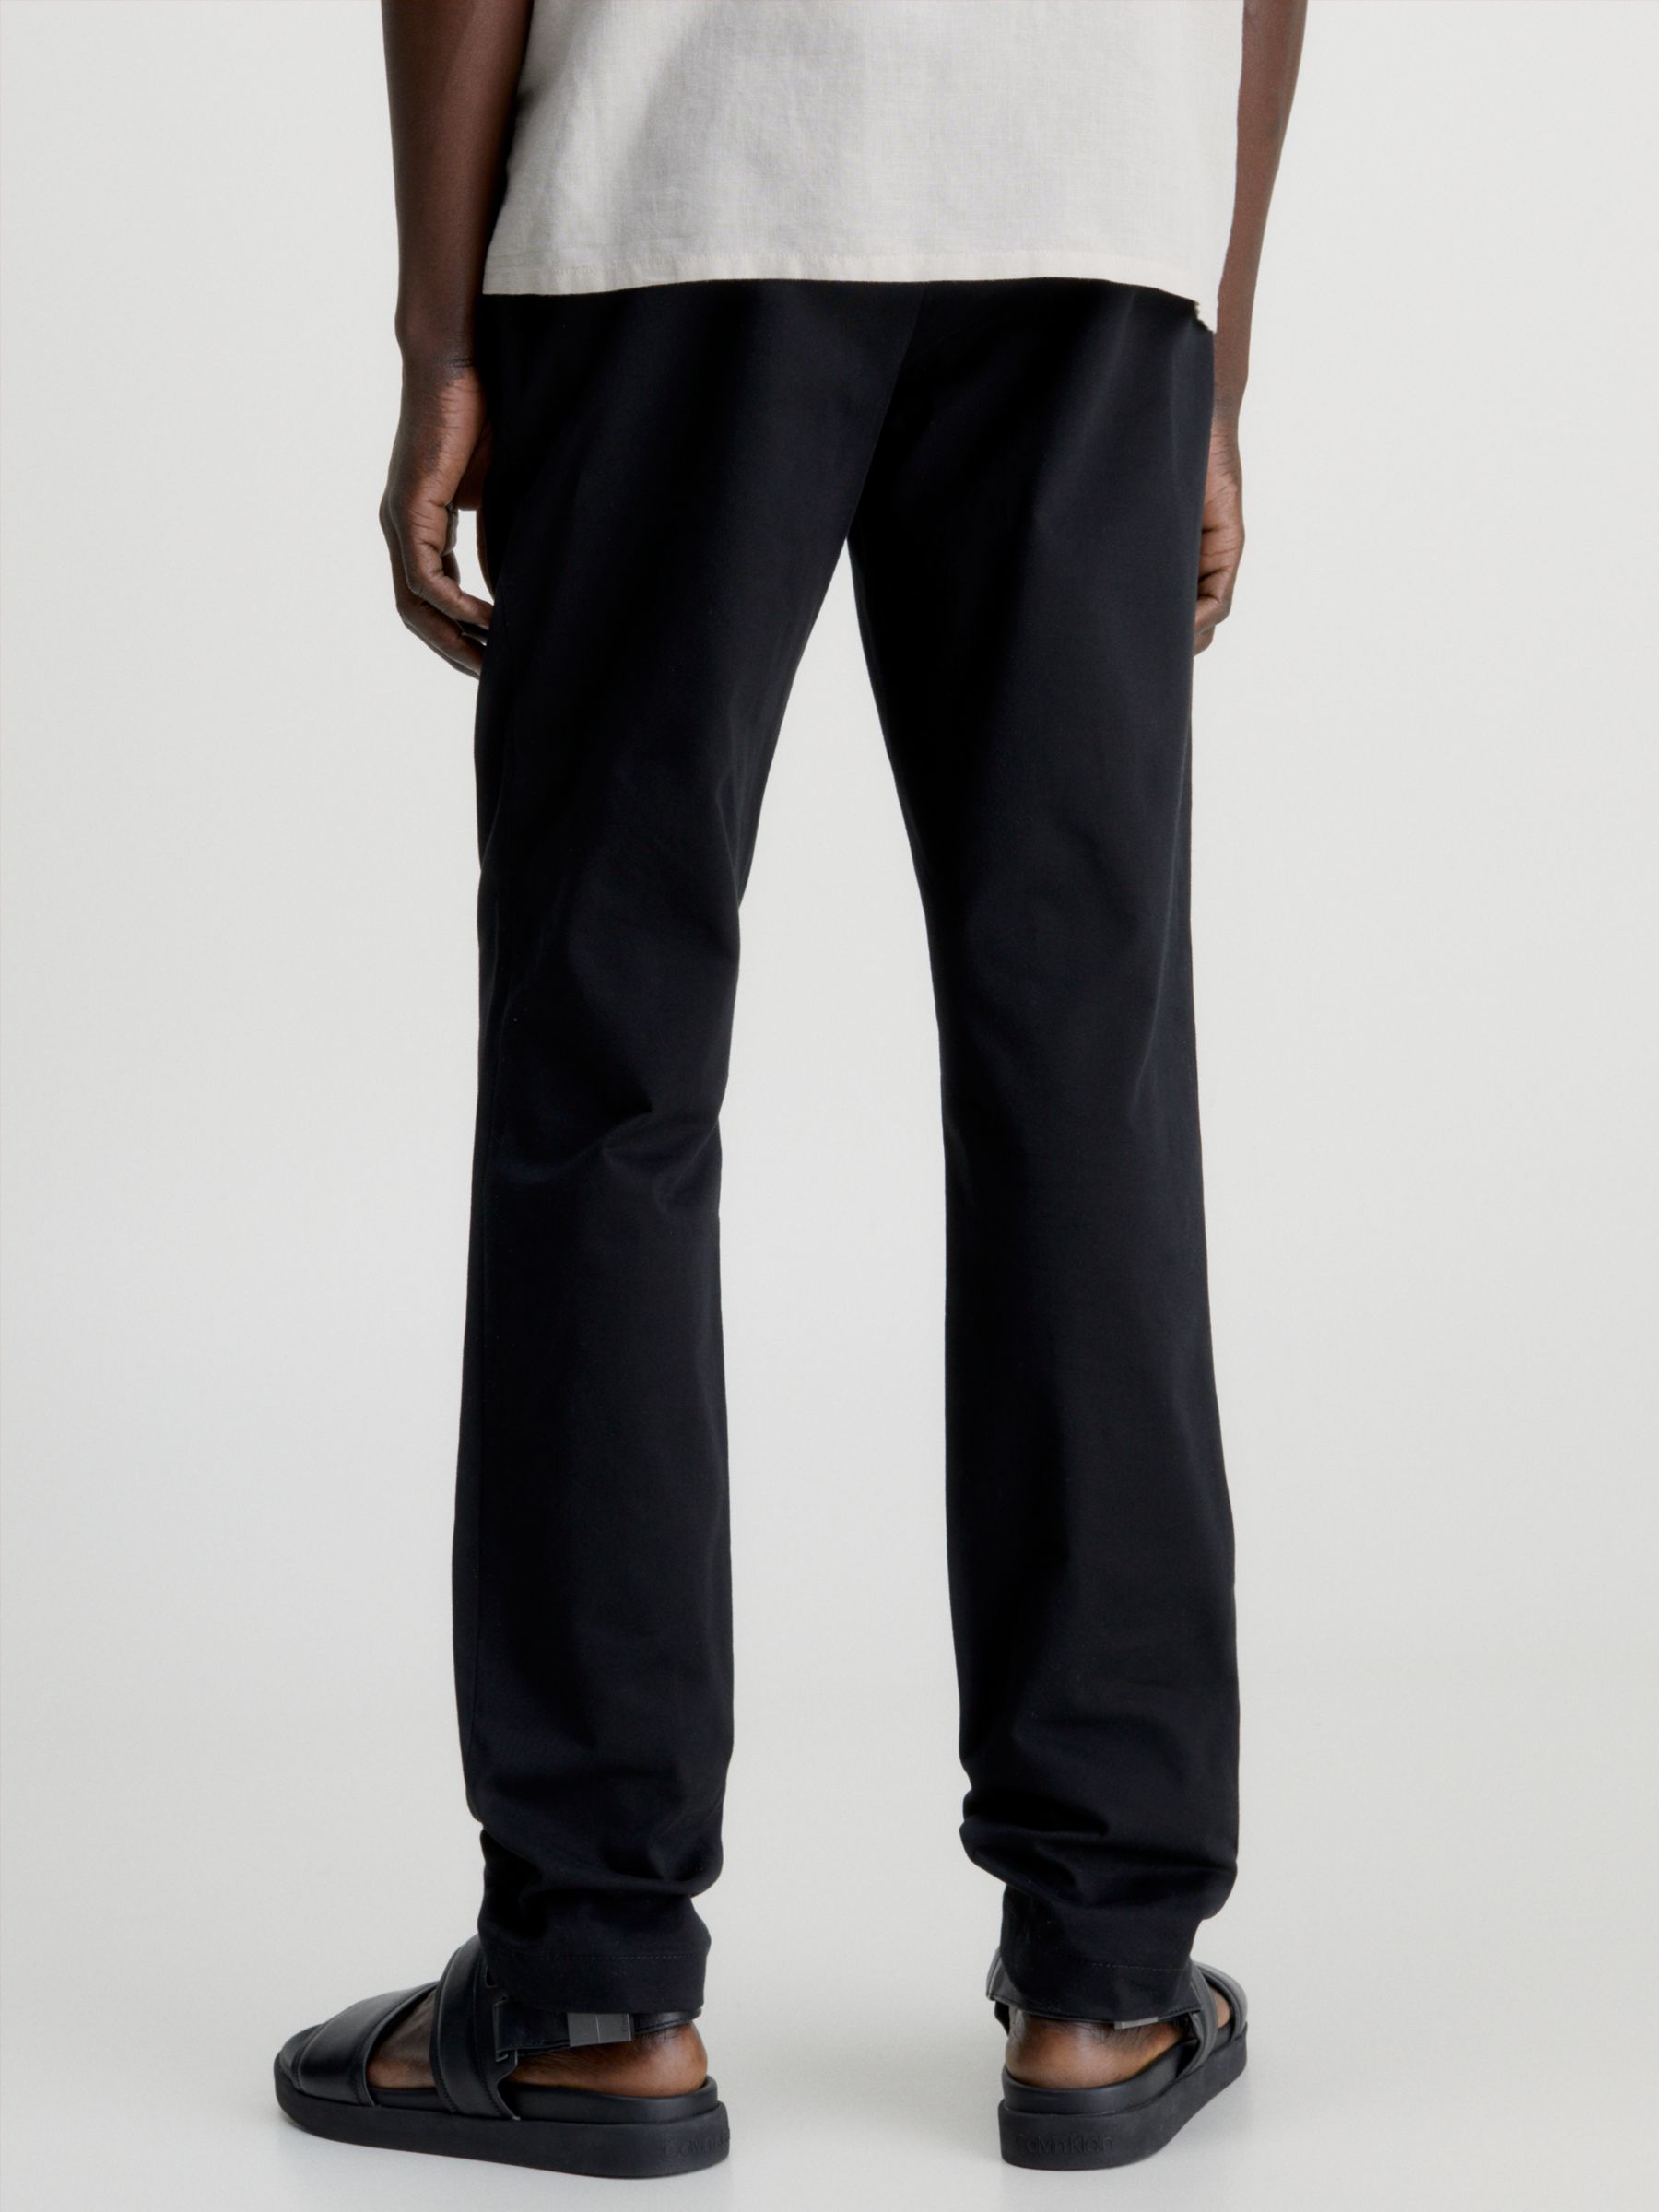 Calvin Klein Cotton Twill Slim Fit Chinos, Ck Black, W32/L32